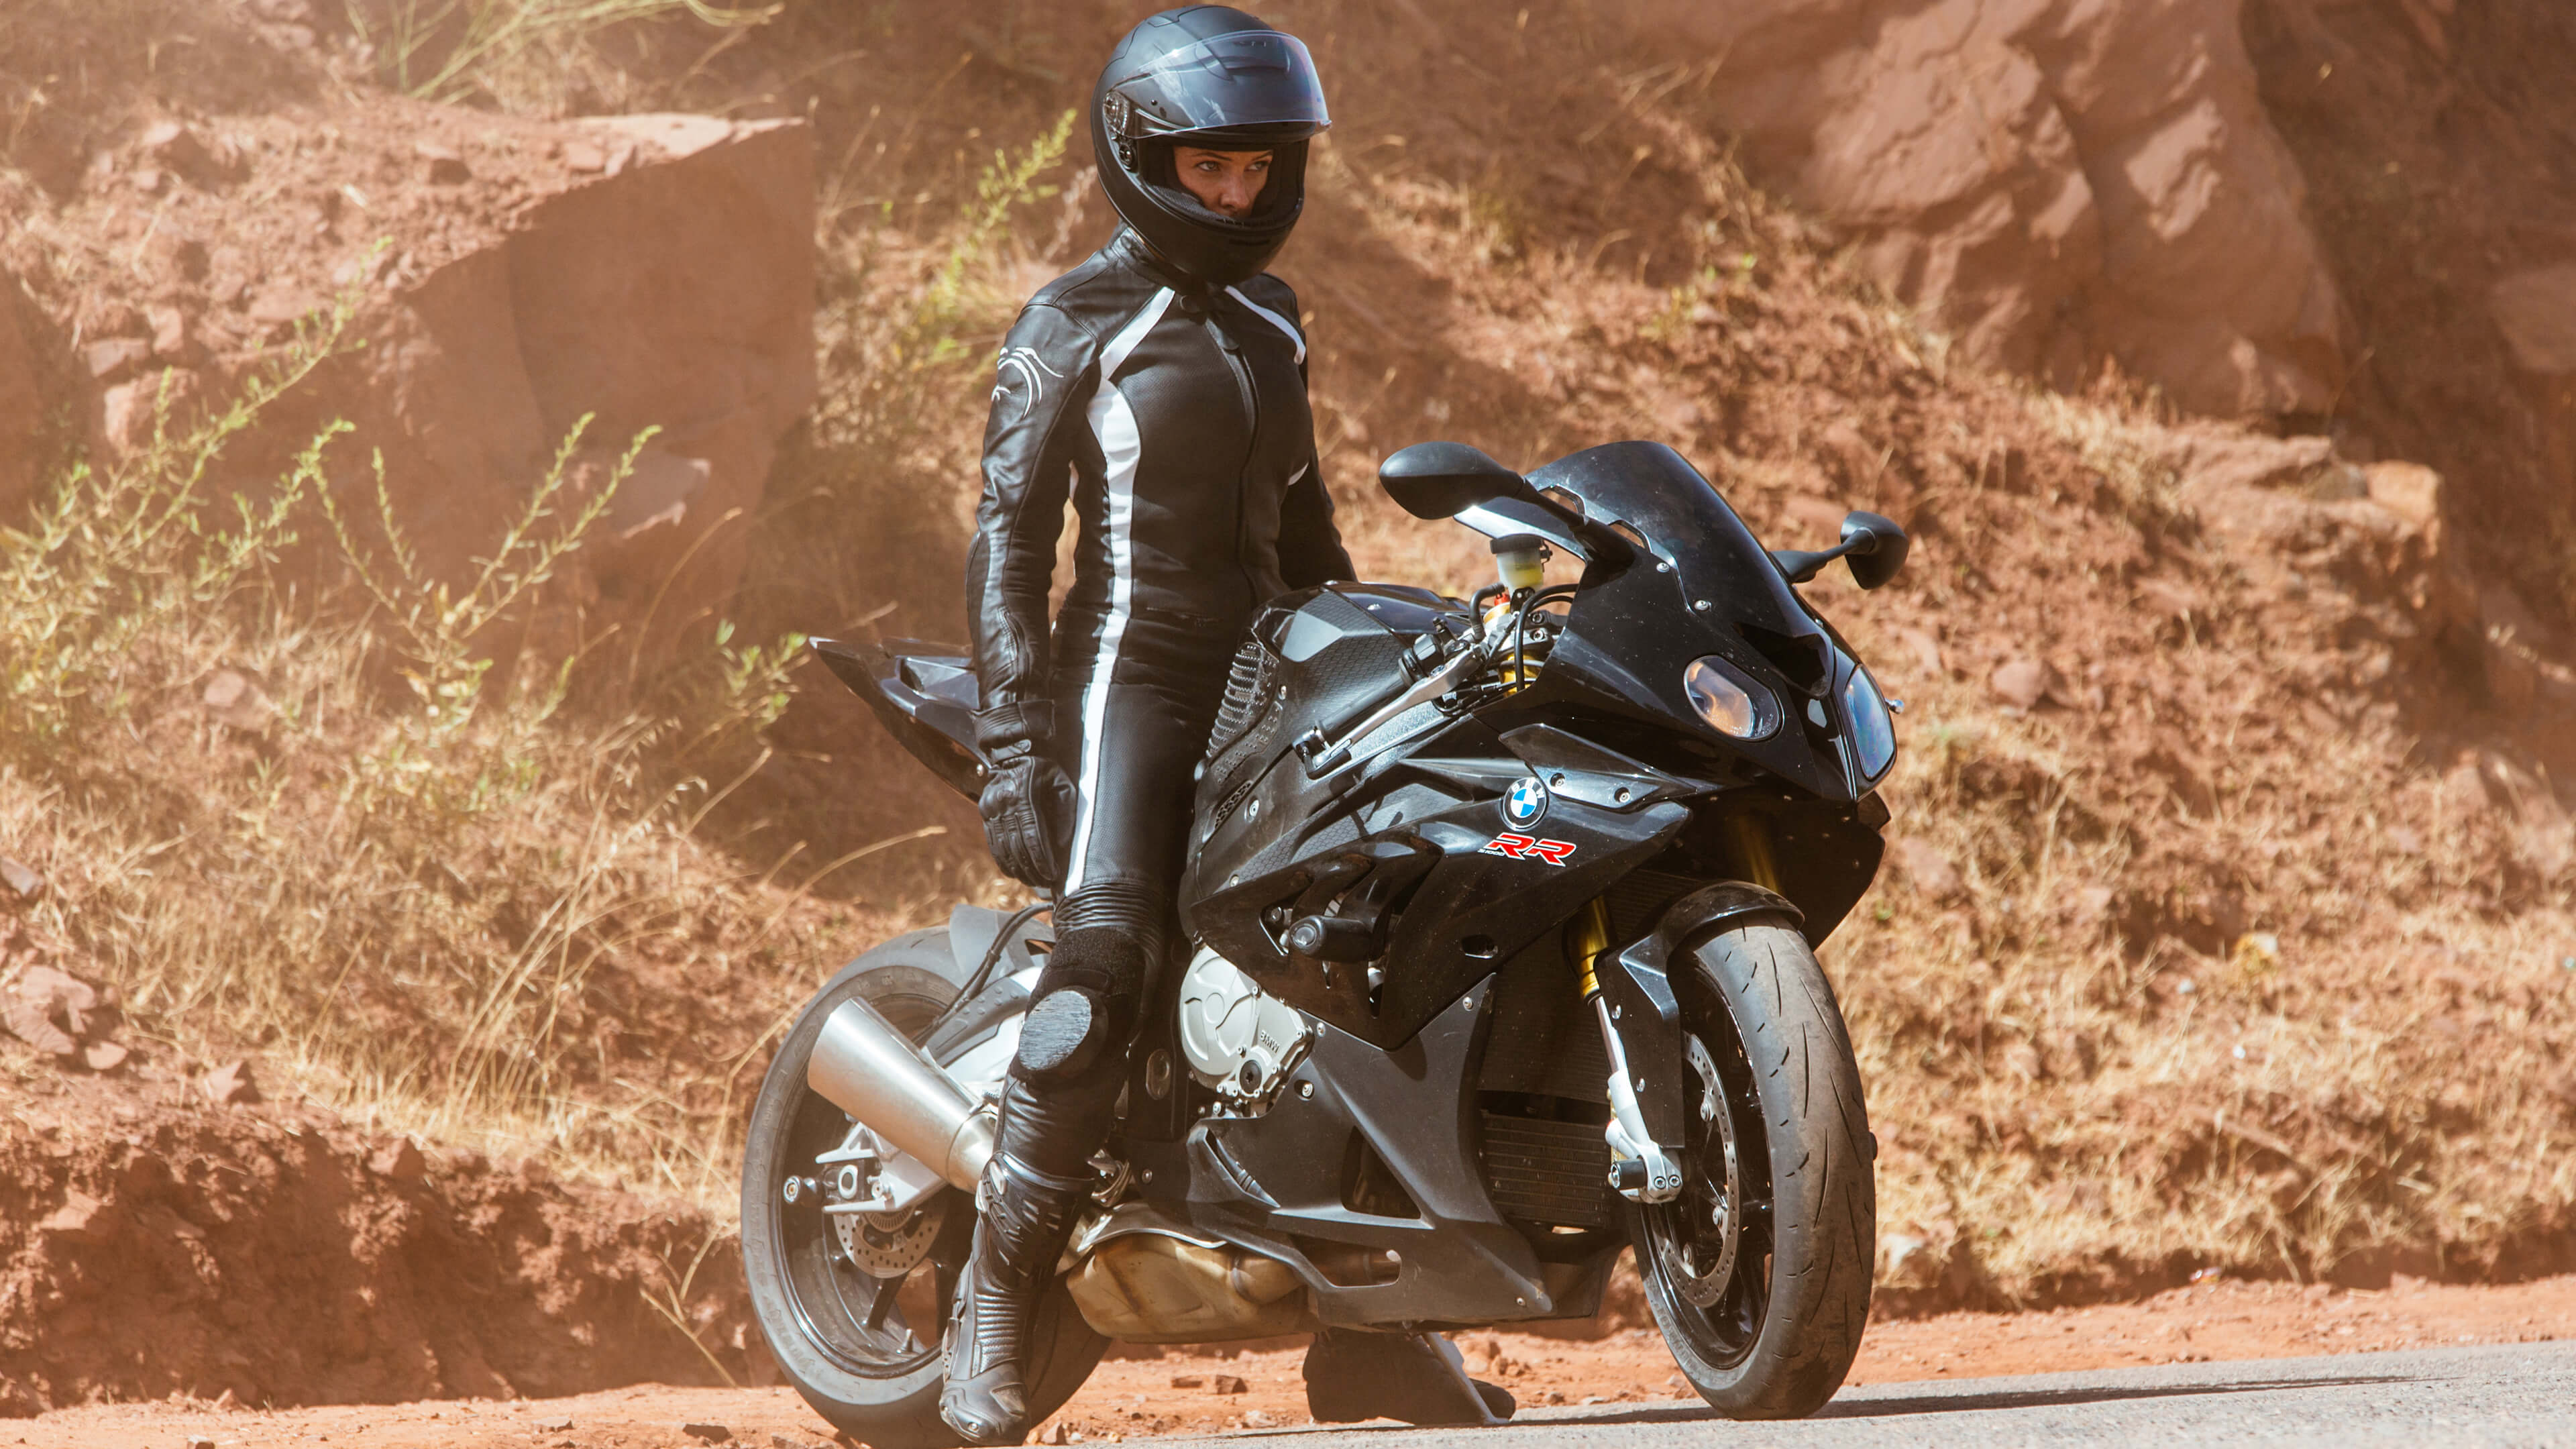 Rebecca Ferguson On Bmw Rr Motorcycle In Mission Impossible - Mission Impossible 6 Motorbike - HD Wallpaper 